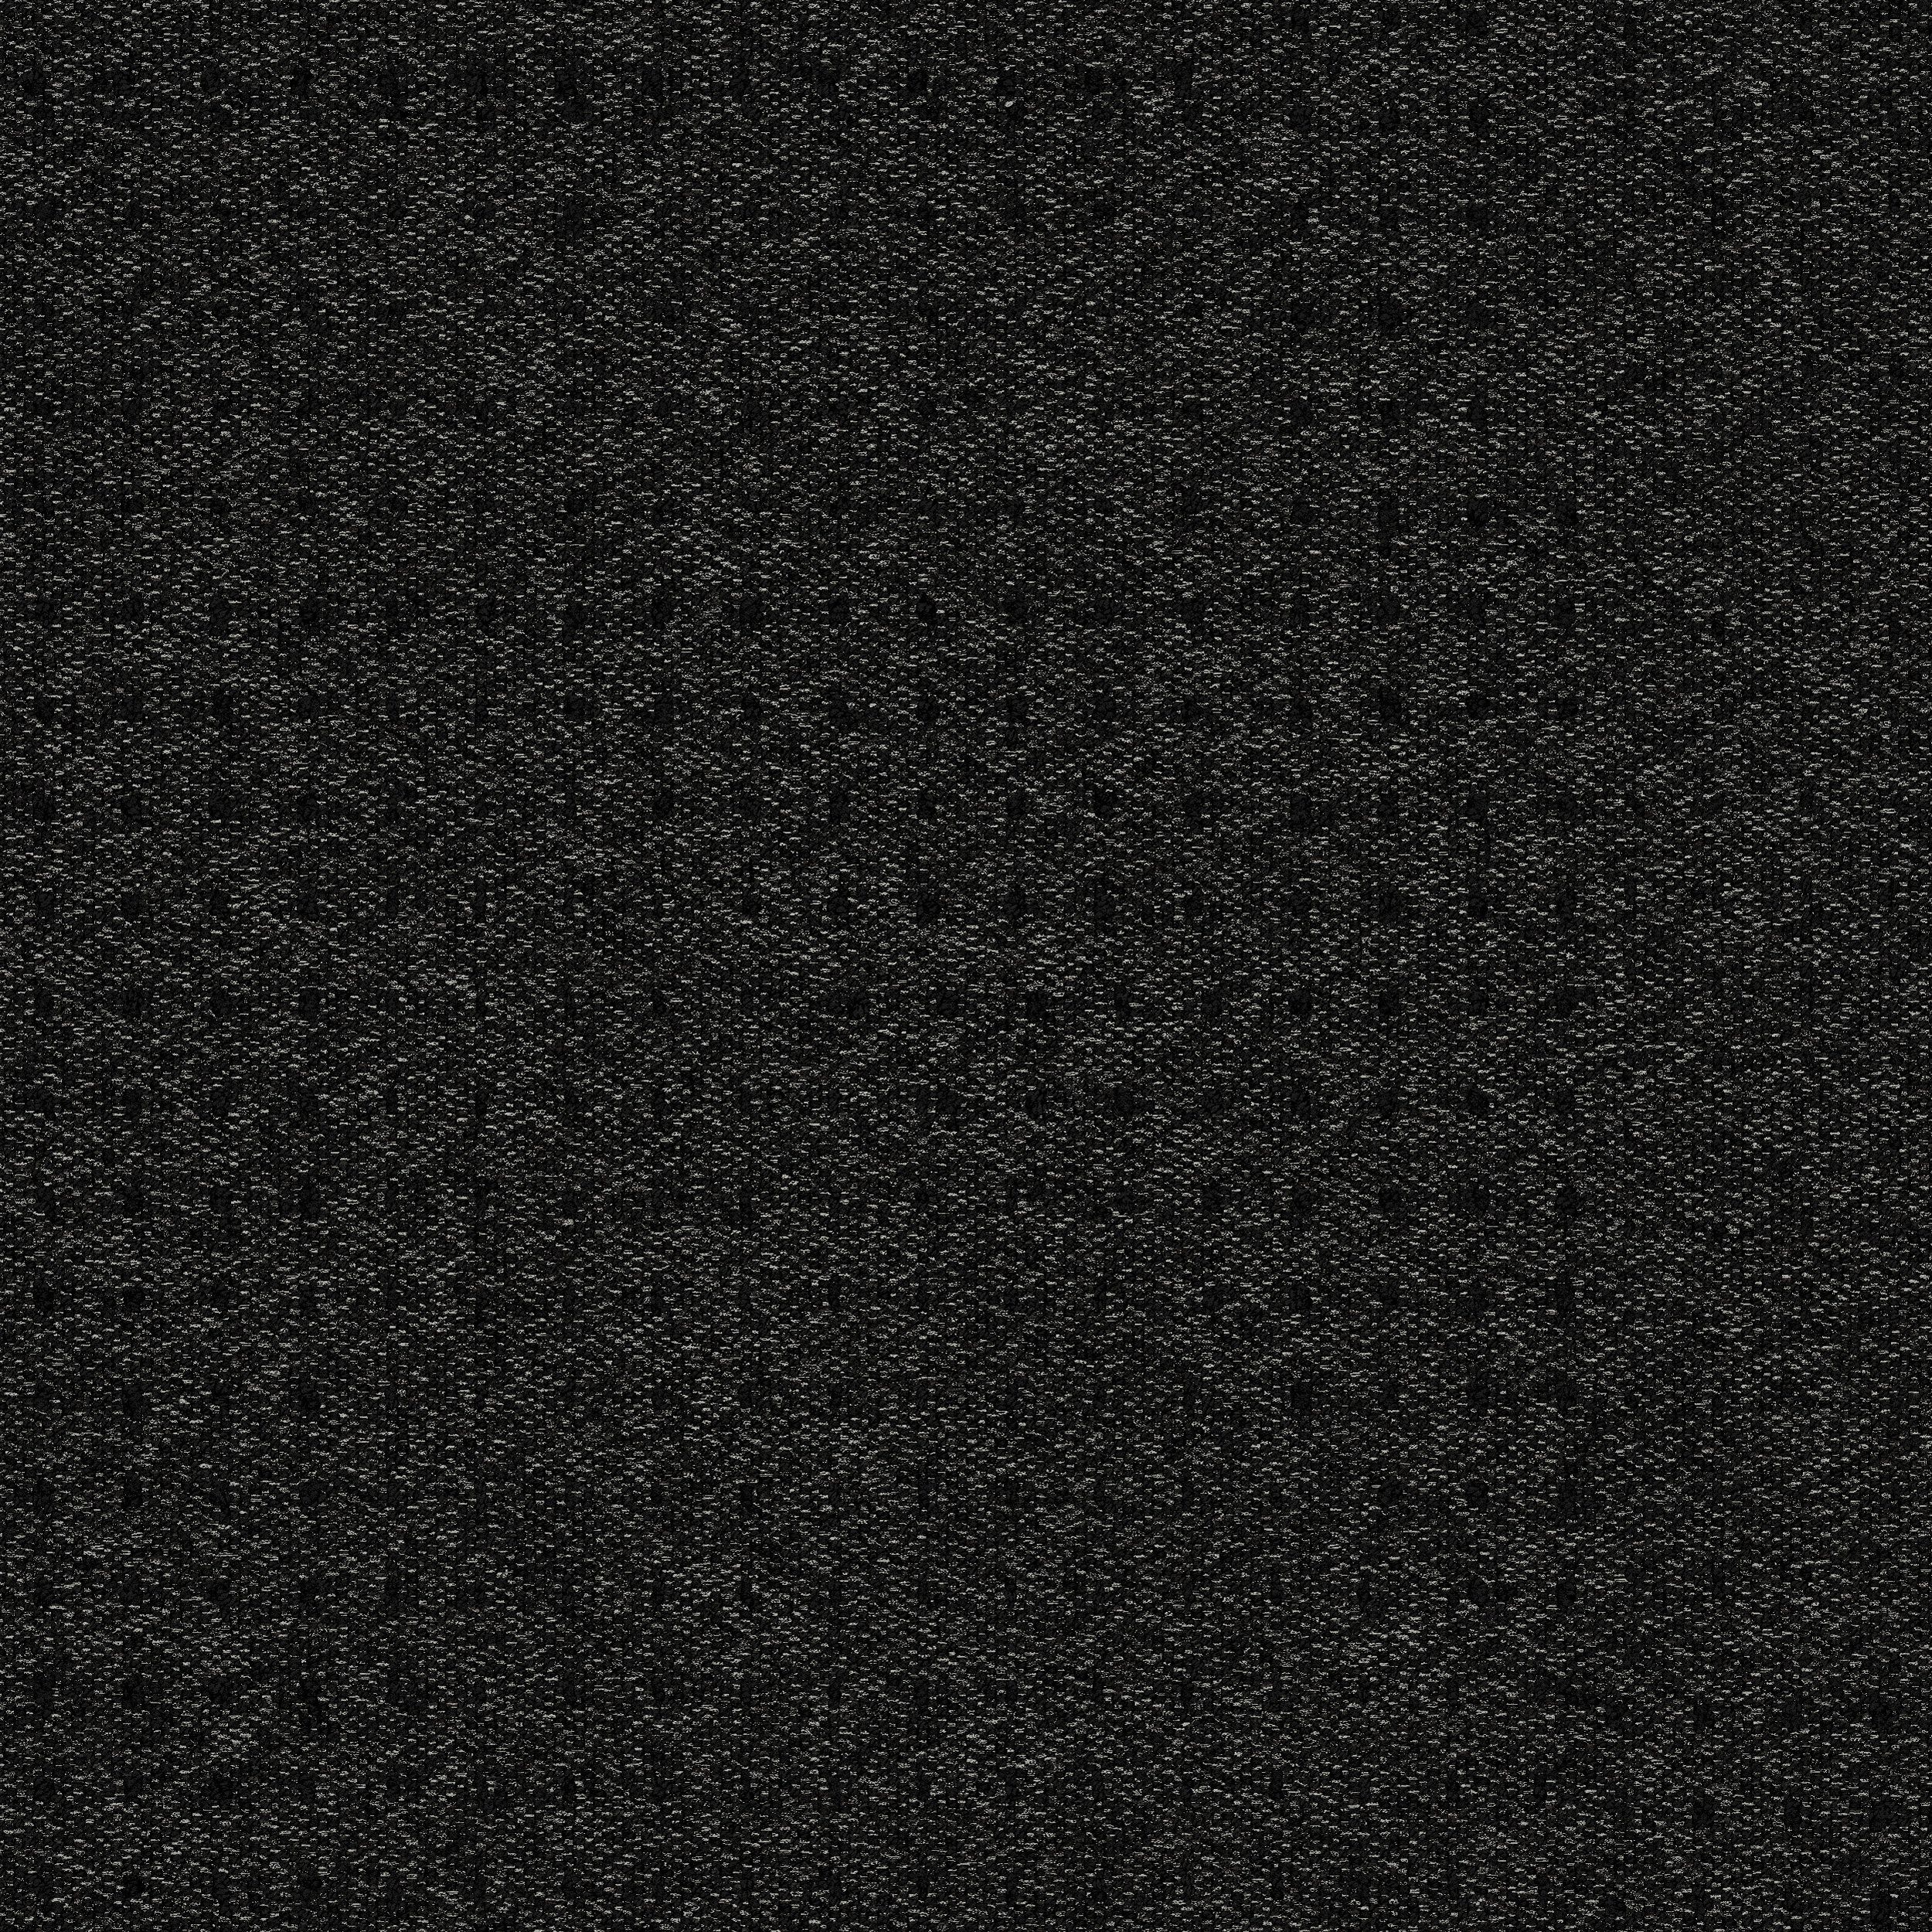 9444-008-000 Black Dot